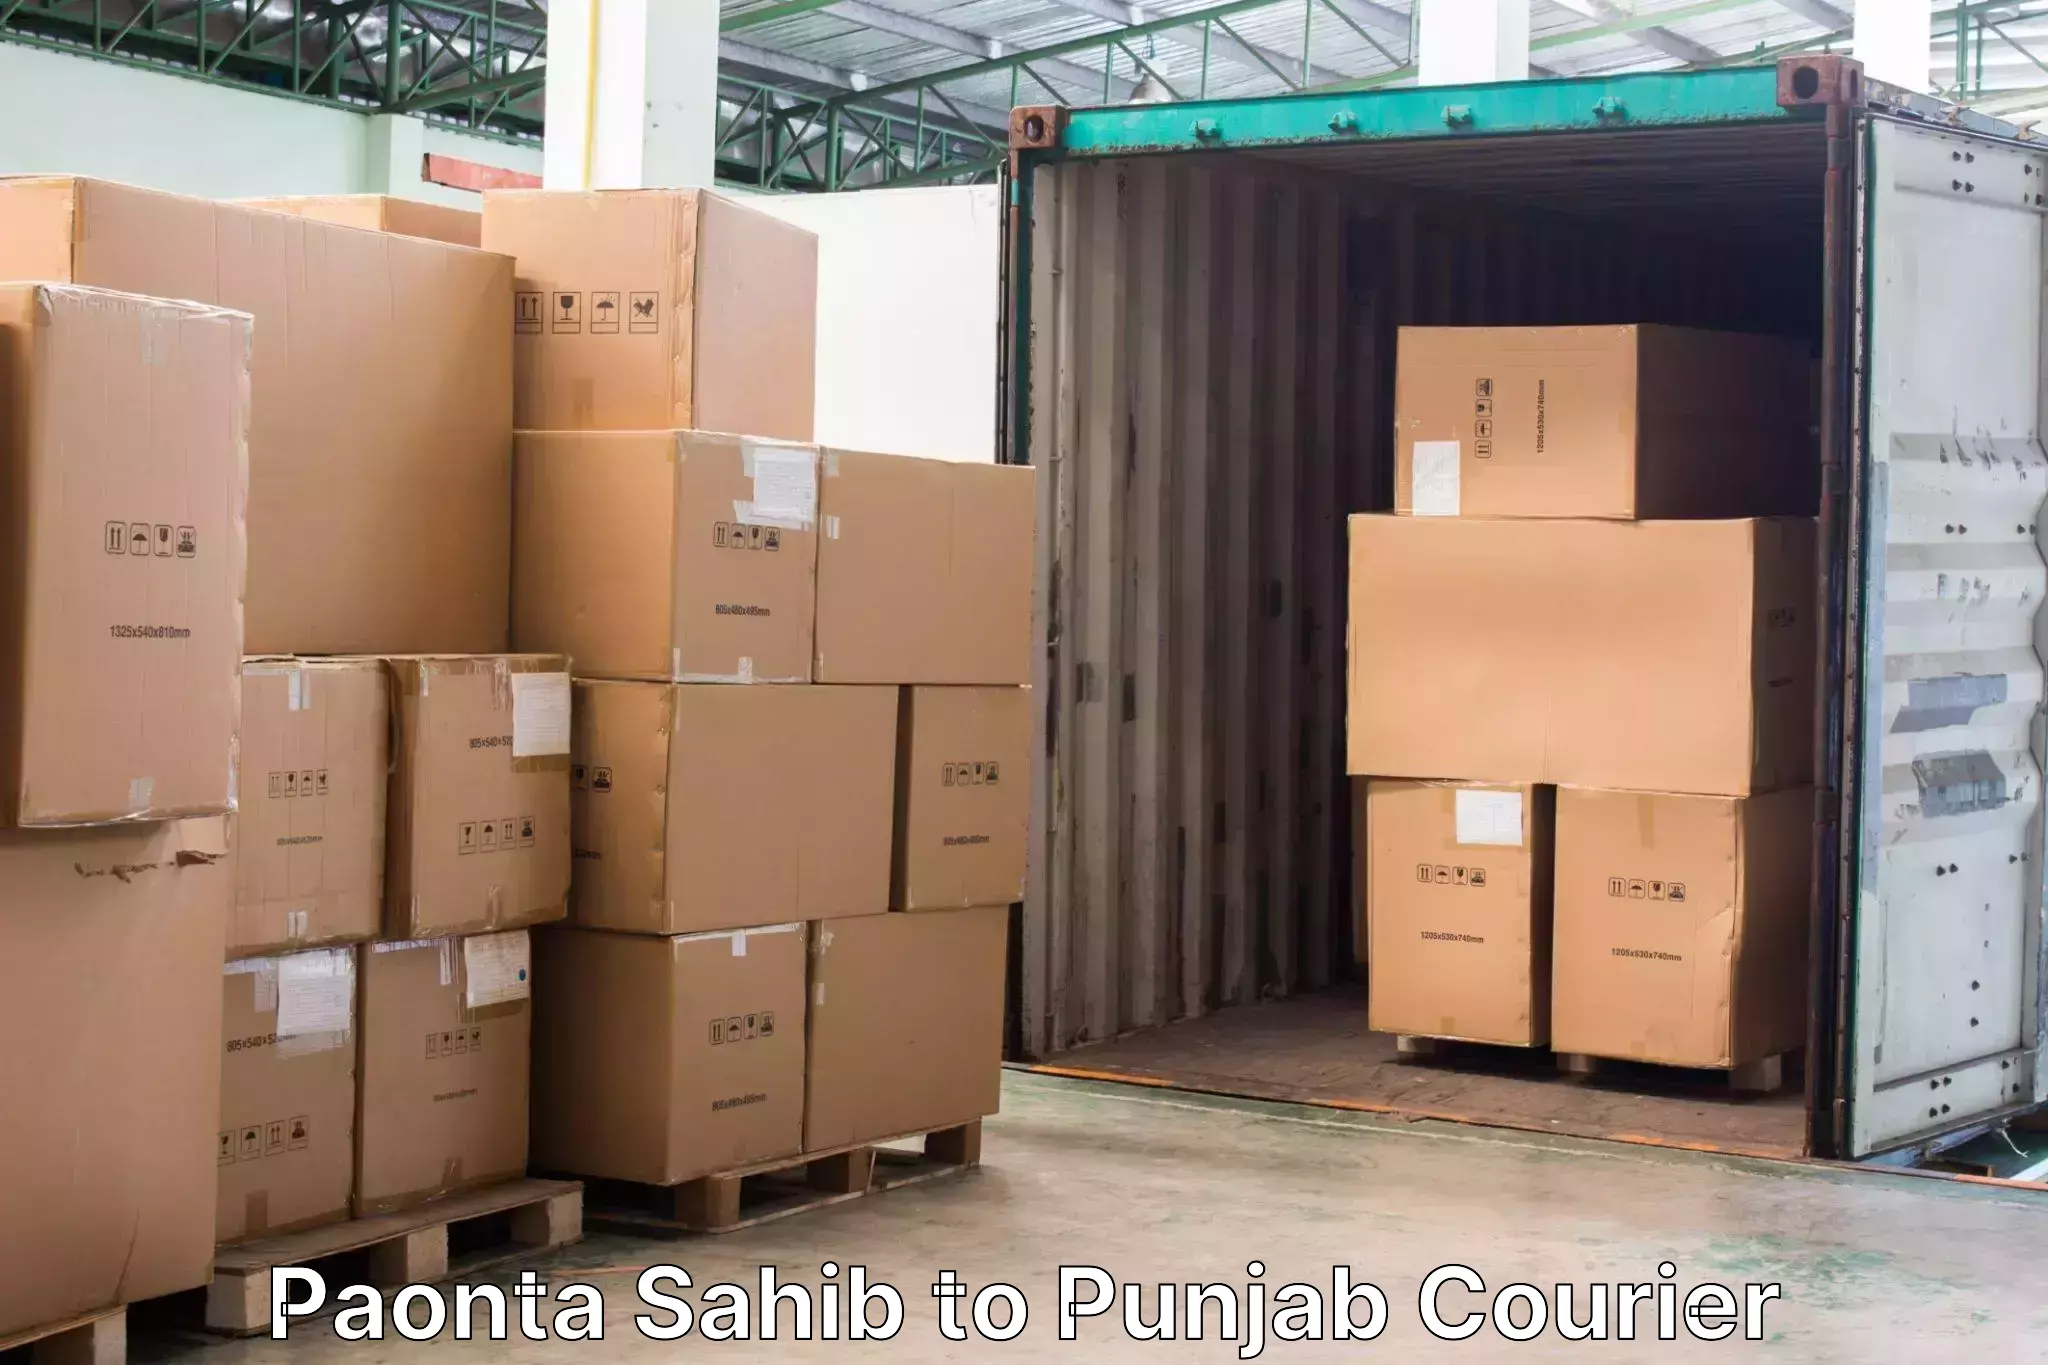 Luggage transfer service Paonta Sahib to Punjab